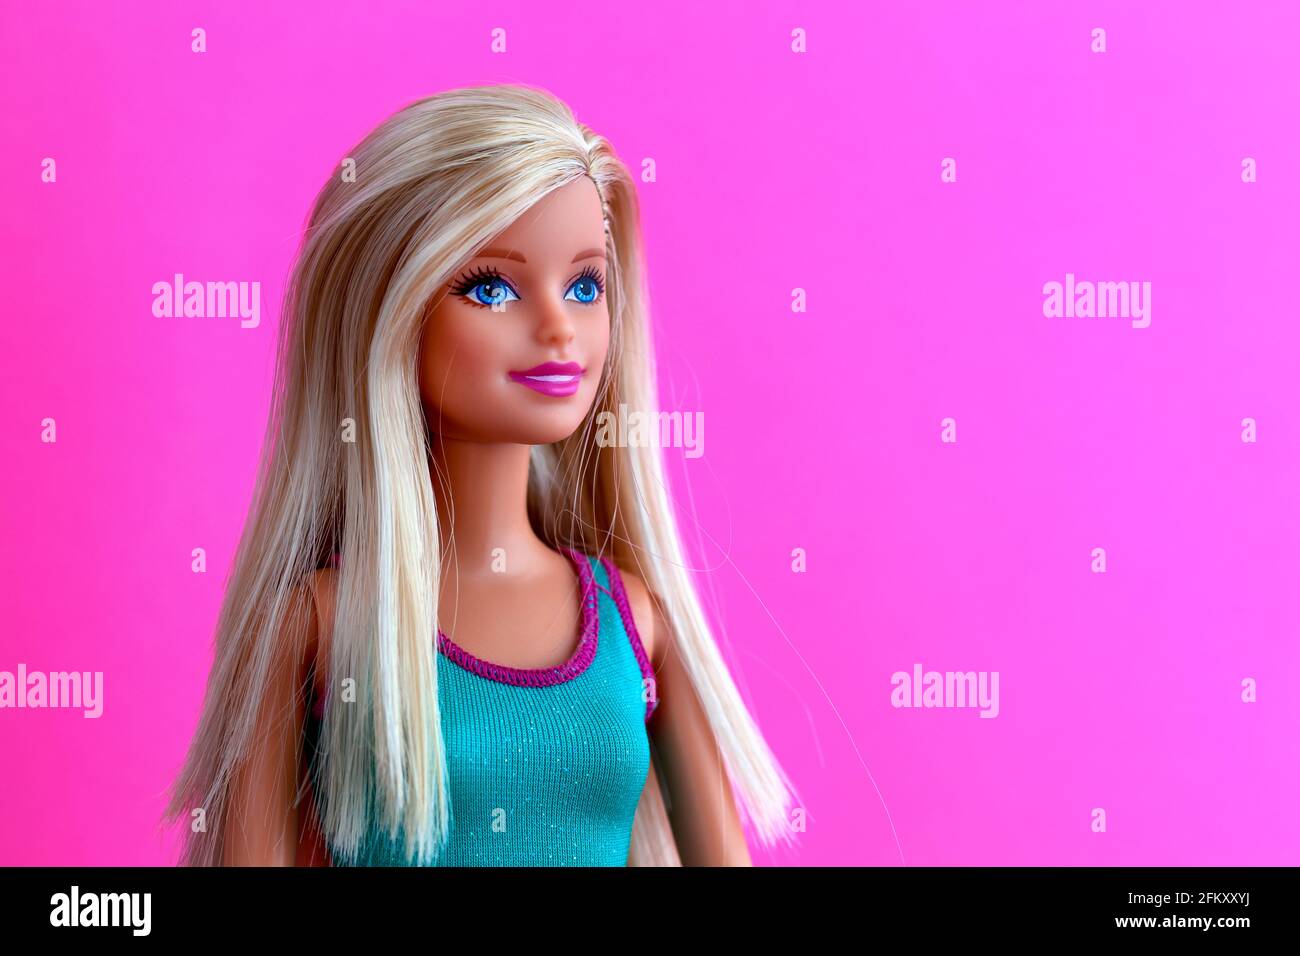 Tambow, Russische Föderation - 27. November 2018 Porträt einer blonden Barbie-Puppe vor magentafarbenem Hintergrund. Stockfoto